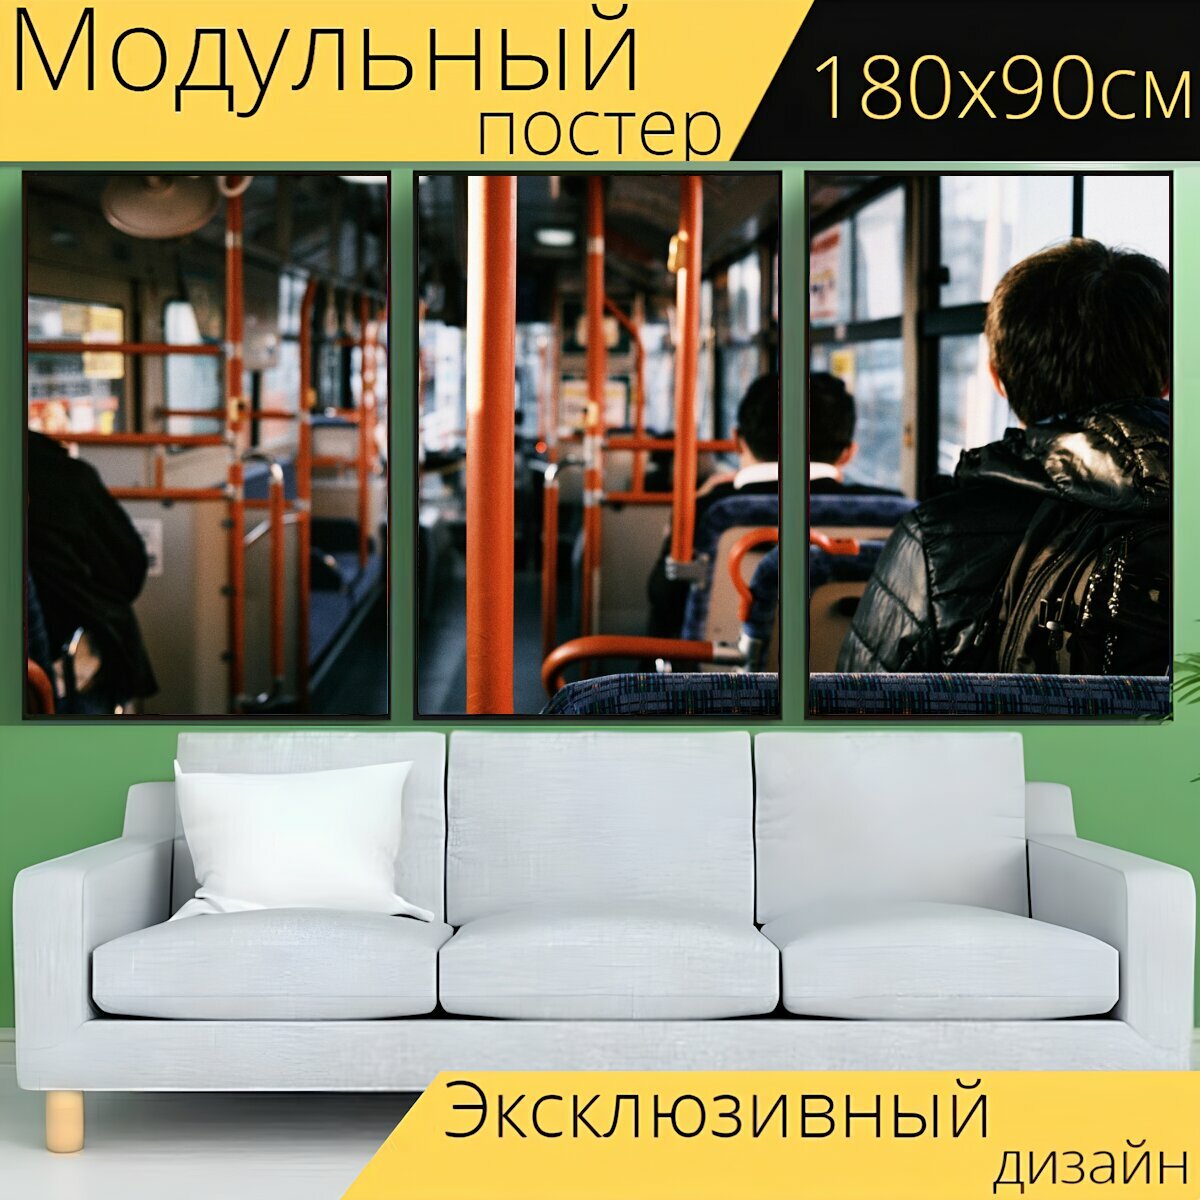 Модульный постер "Автобус, сиденья, транспортное средство" 180 x 90 см. для интерьера